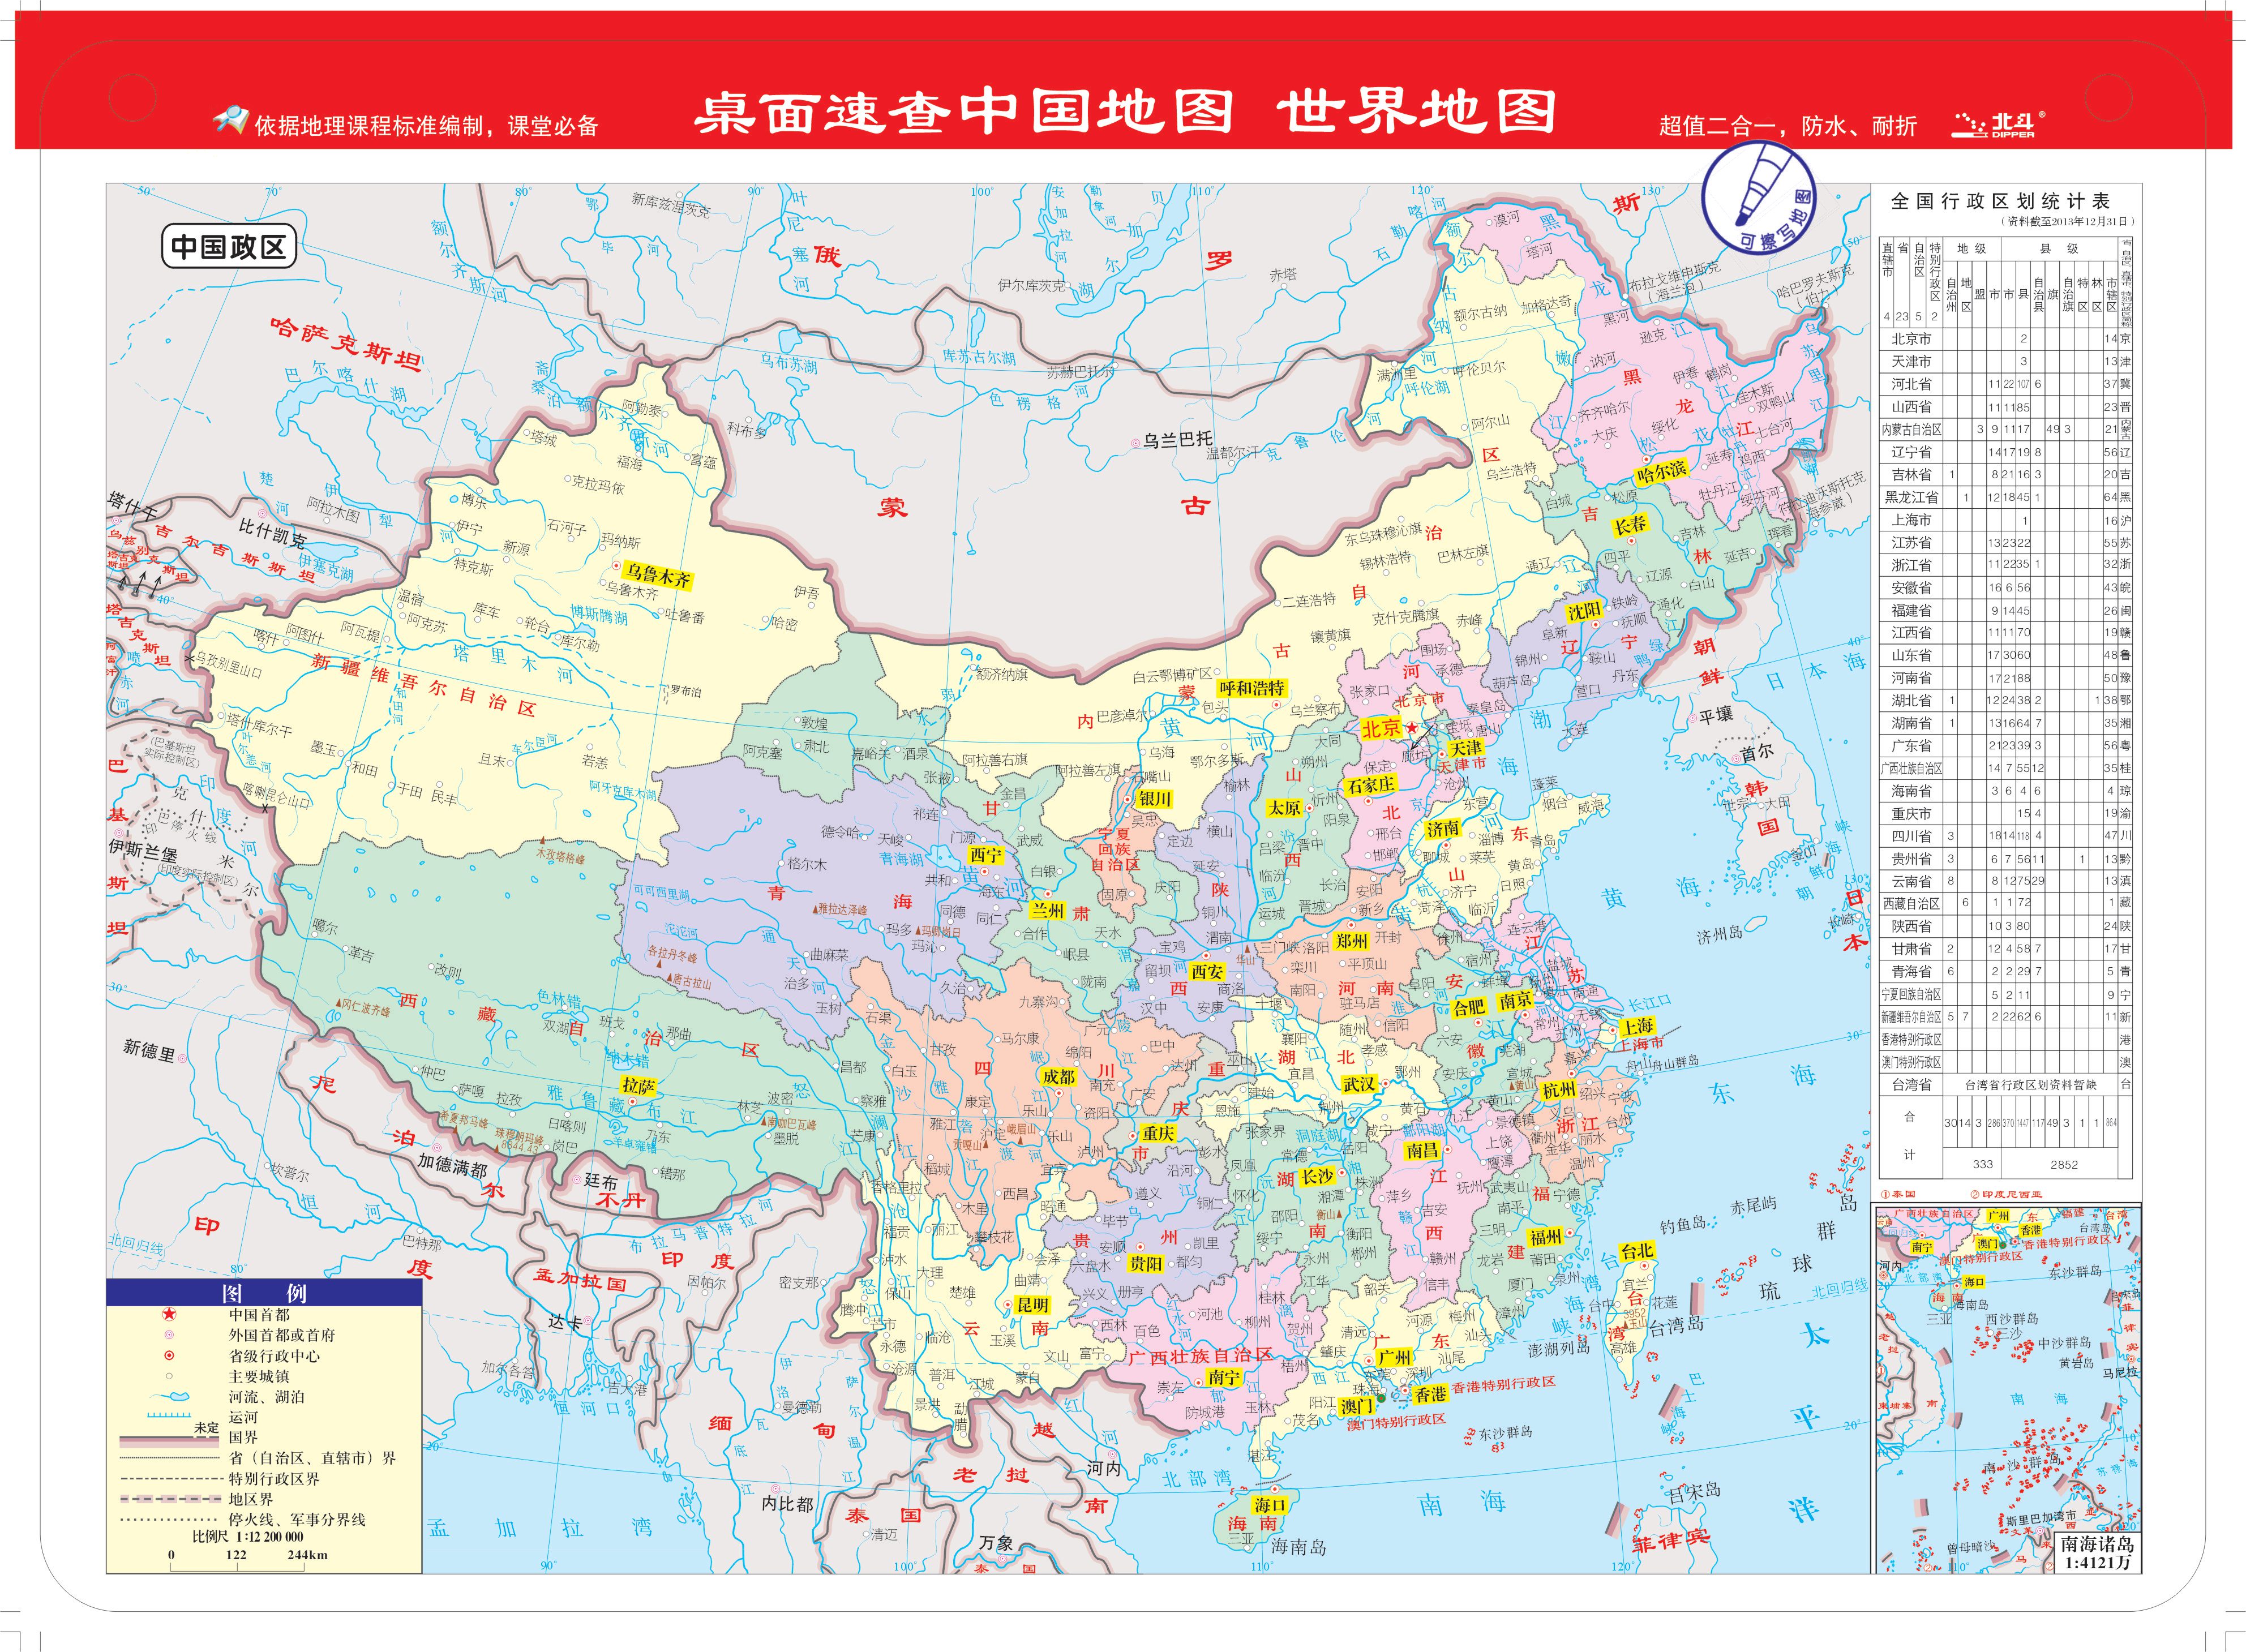 桌面速查:中国地图 世界地图(书包版)图片